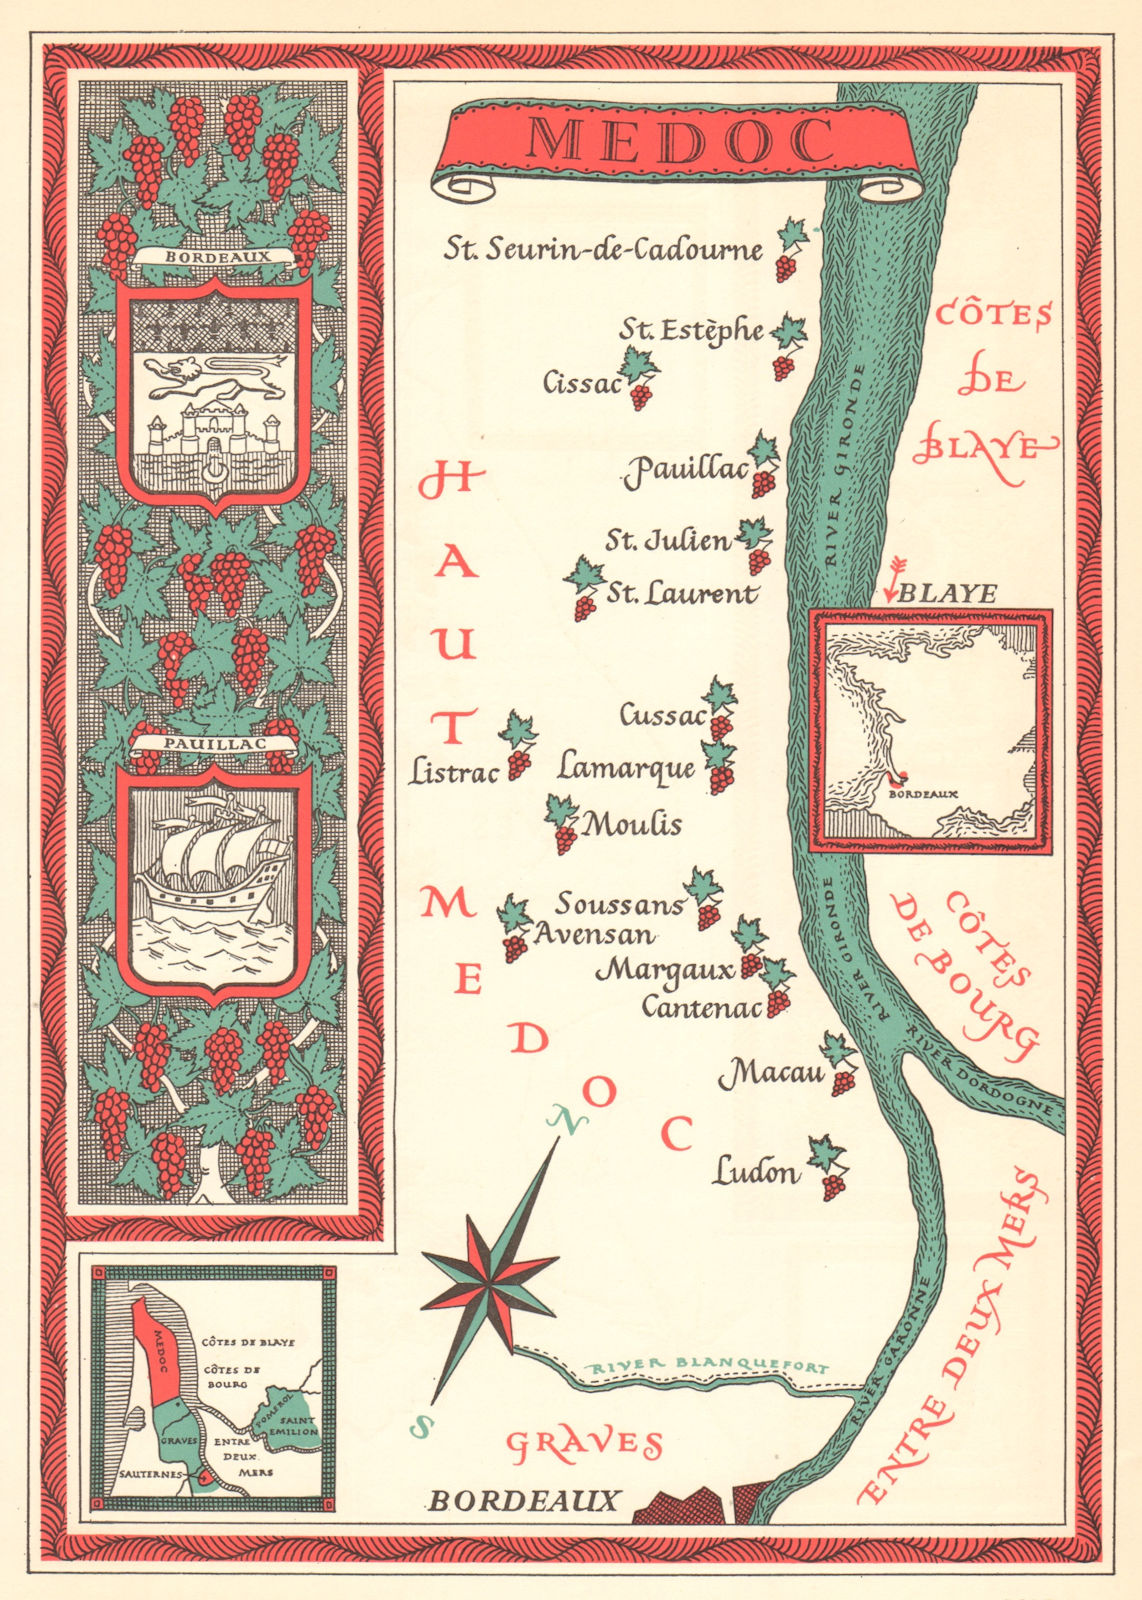 Associate Product Médoc wine map. Carte vinicole. Bordeaux Gironde 1957 old vintage chart